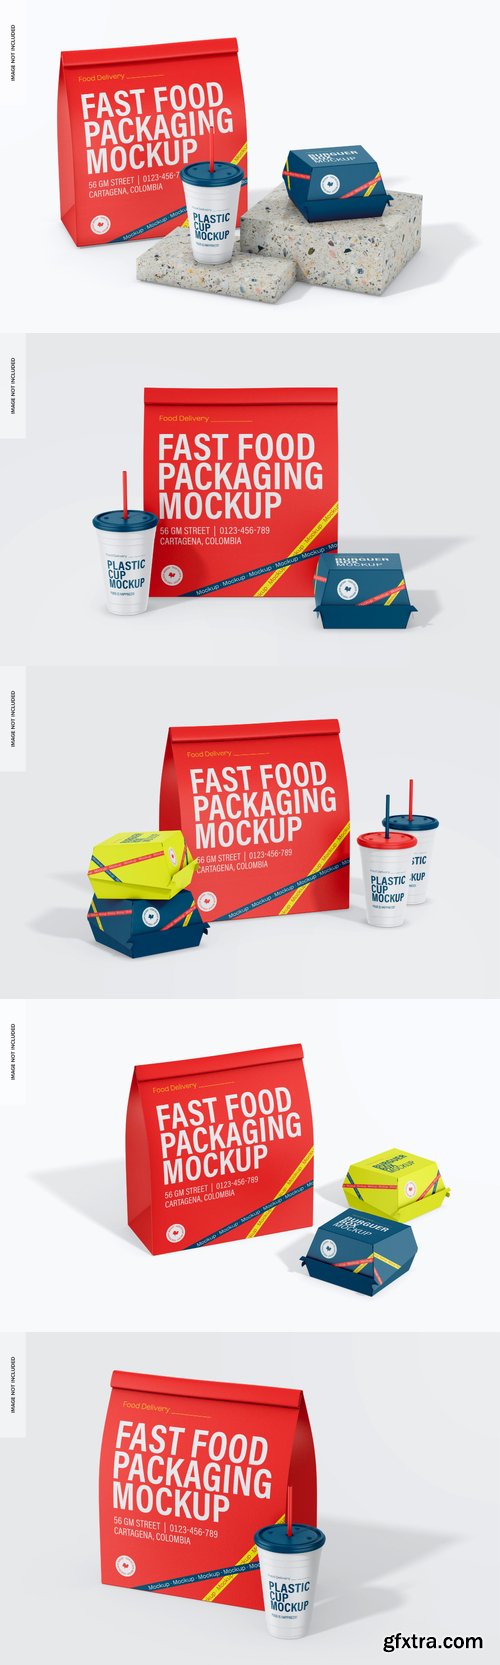 Fast food packaging mockup